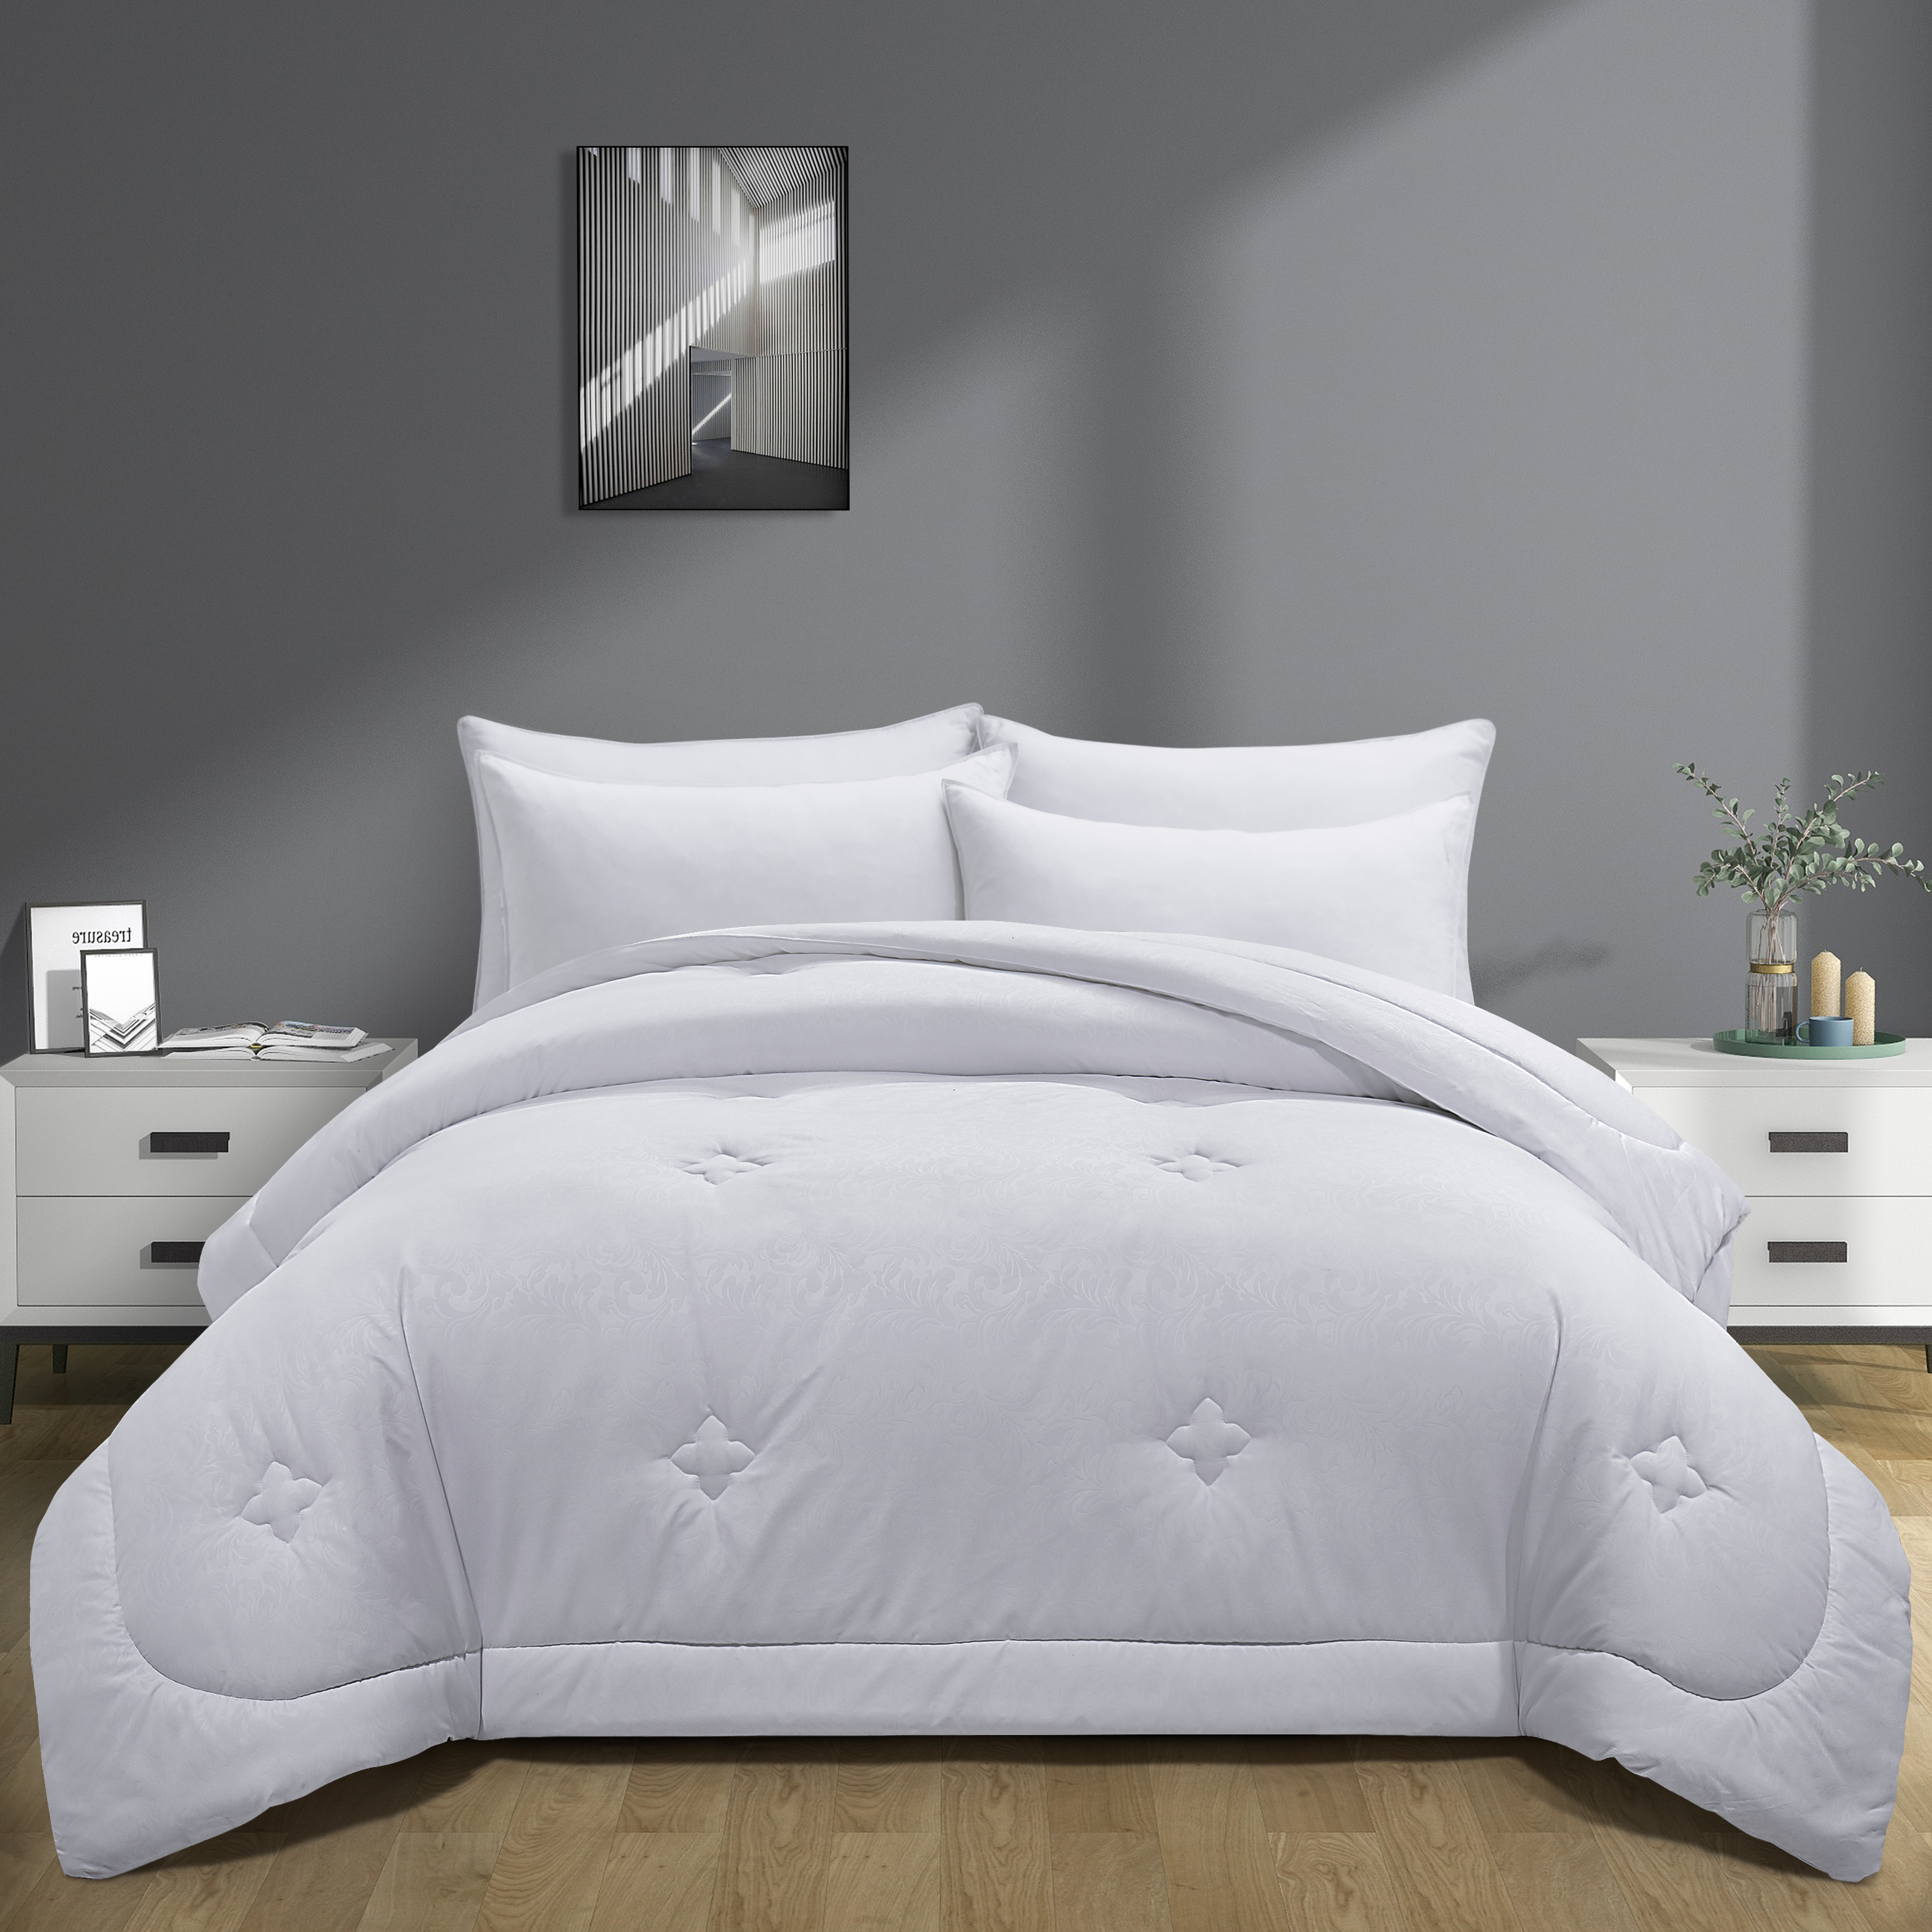 Embossed All Season Down Alternative Comforter- Medium Weight Duvet Insert - White, Full/Queen